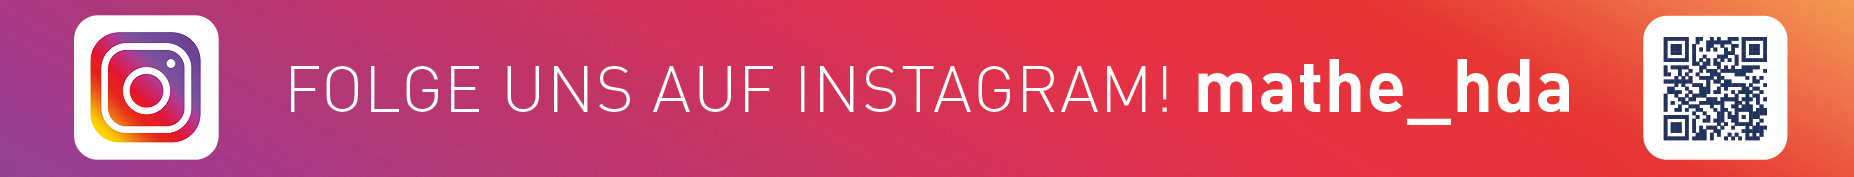 Logo von Instagram mit dem Hinweis, dass unter mathe_hda dem Studiengang Angewandte Mathematik bei Instagram gefolgt werden kann. 